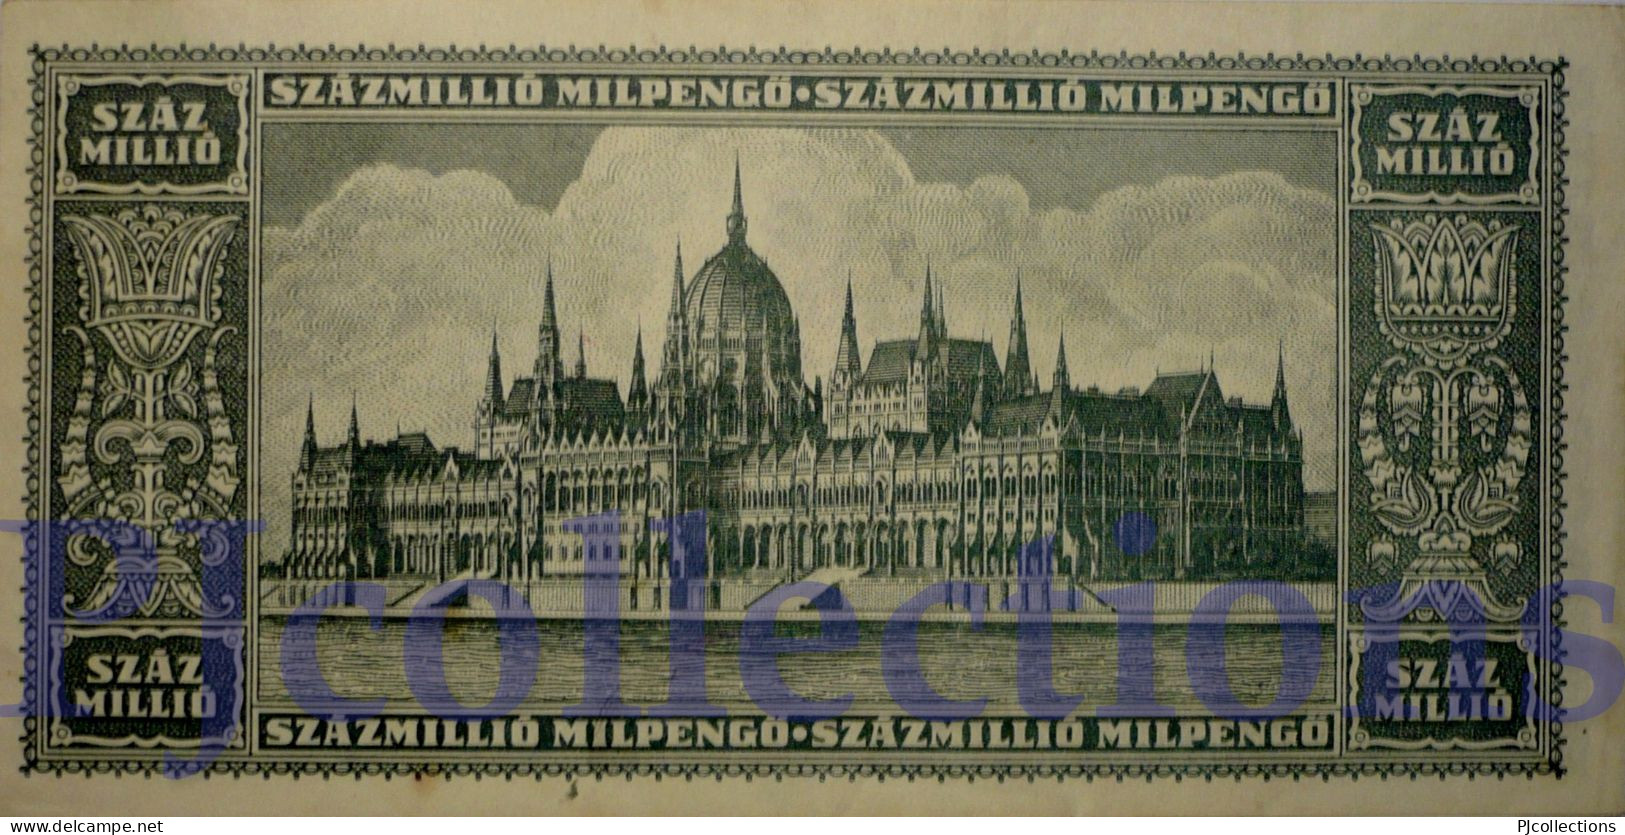 HUNGARY 100 MILLION MILPENGO 1946 PICK 130 AU - Ungarn